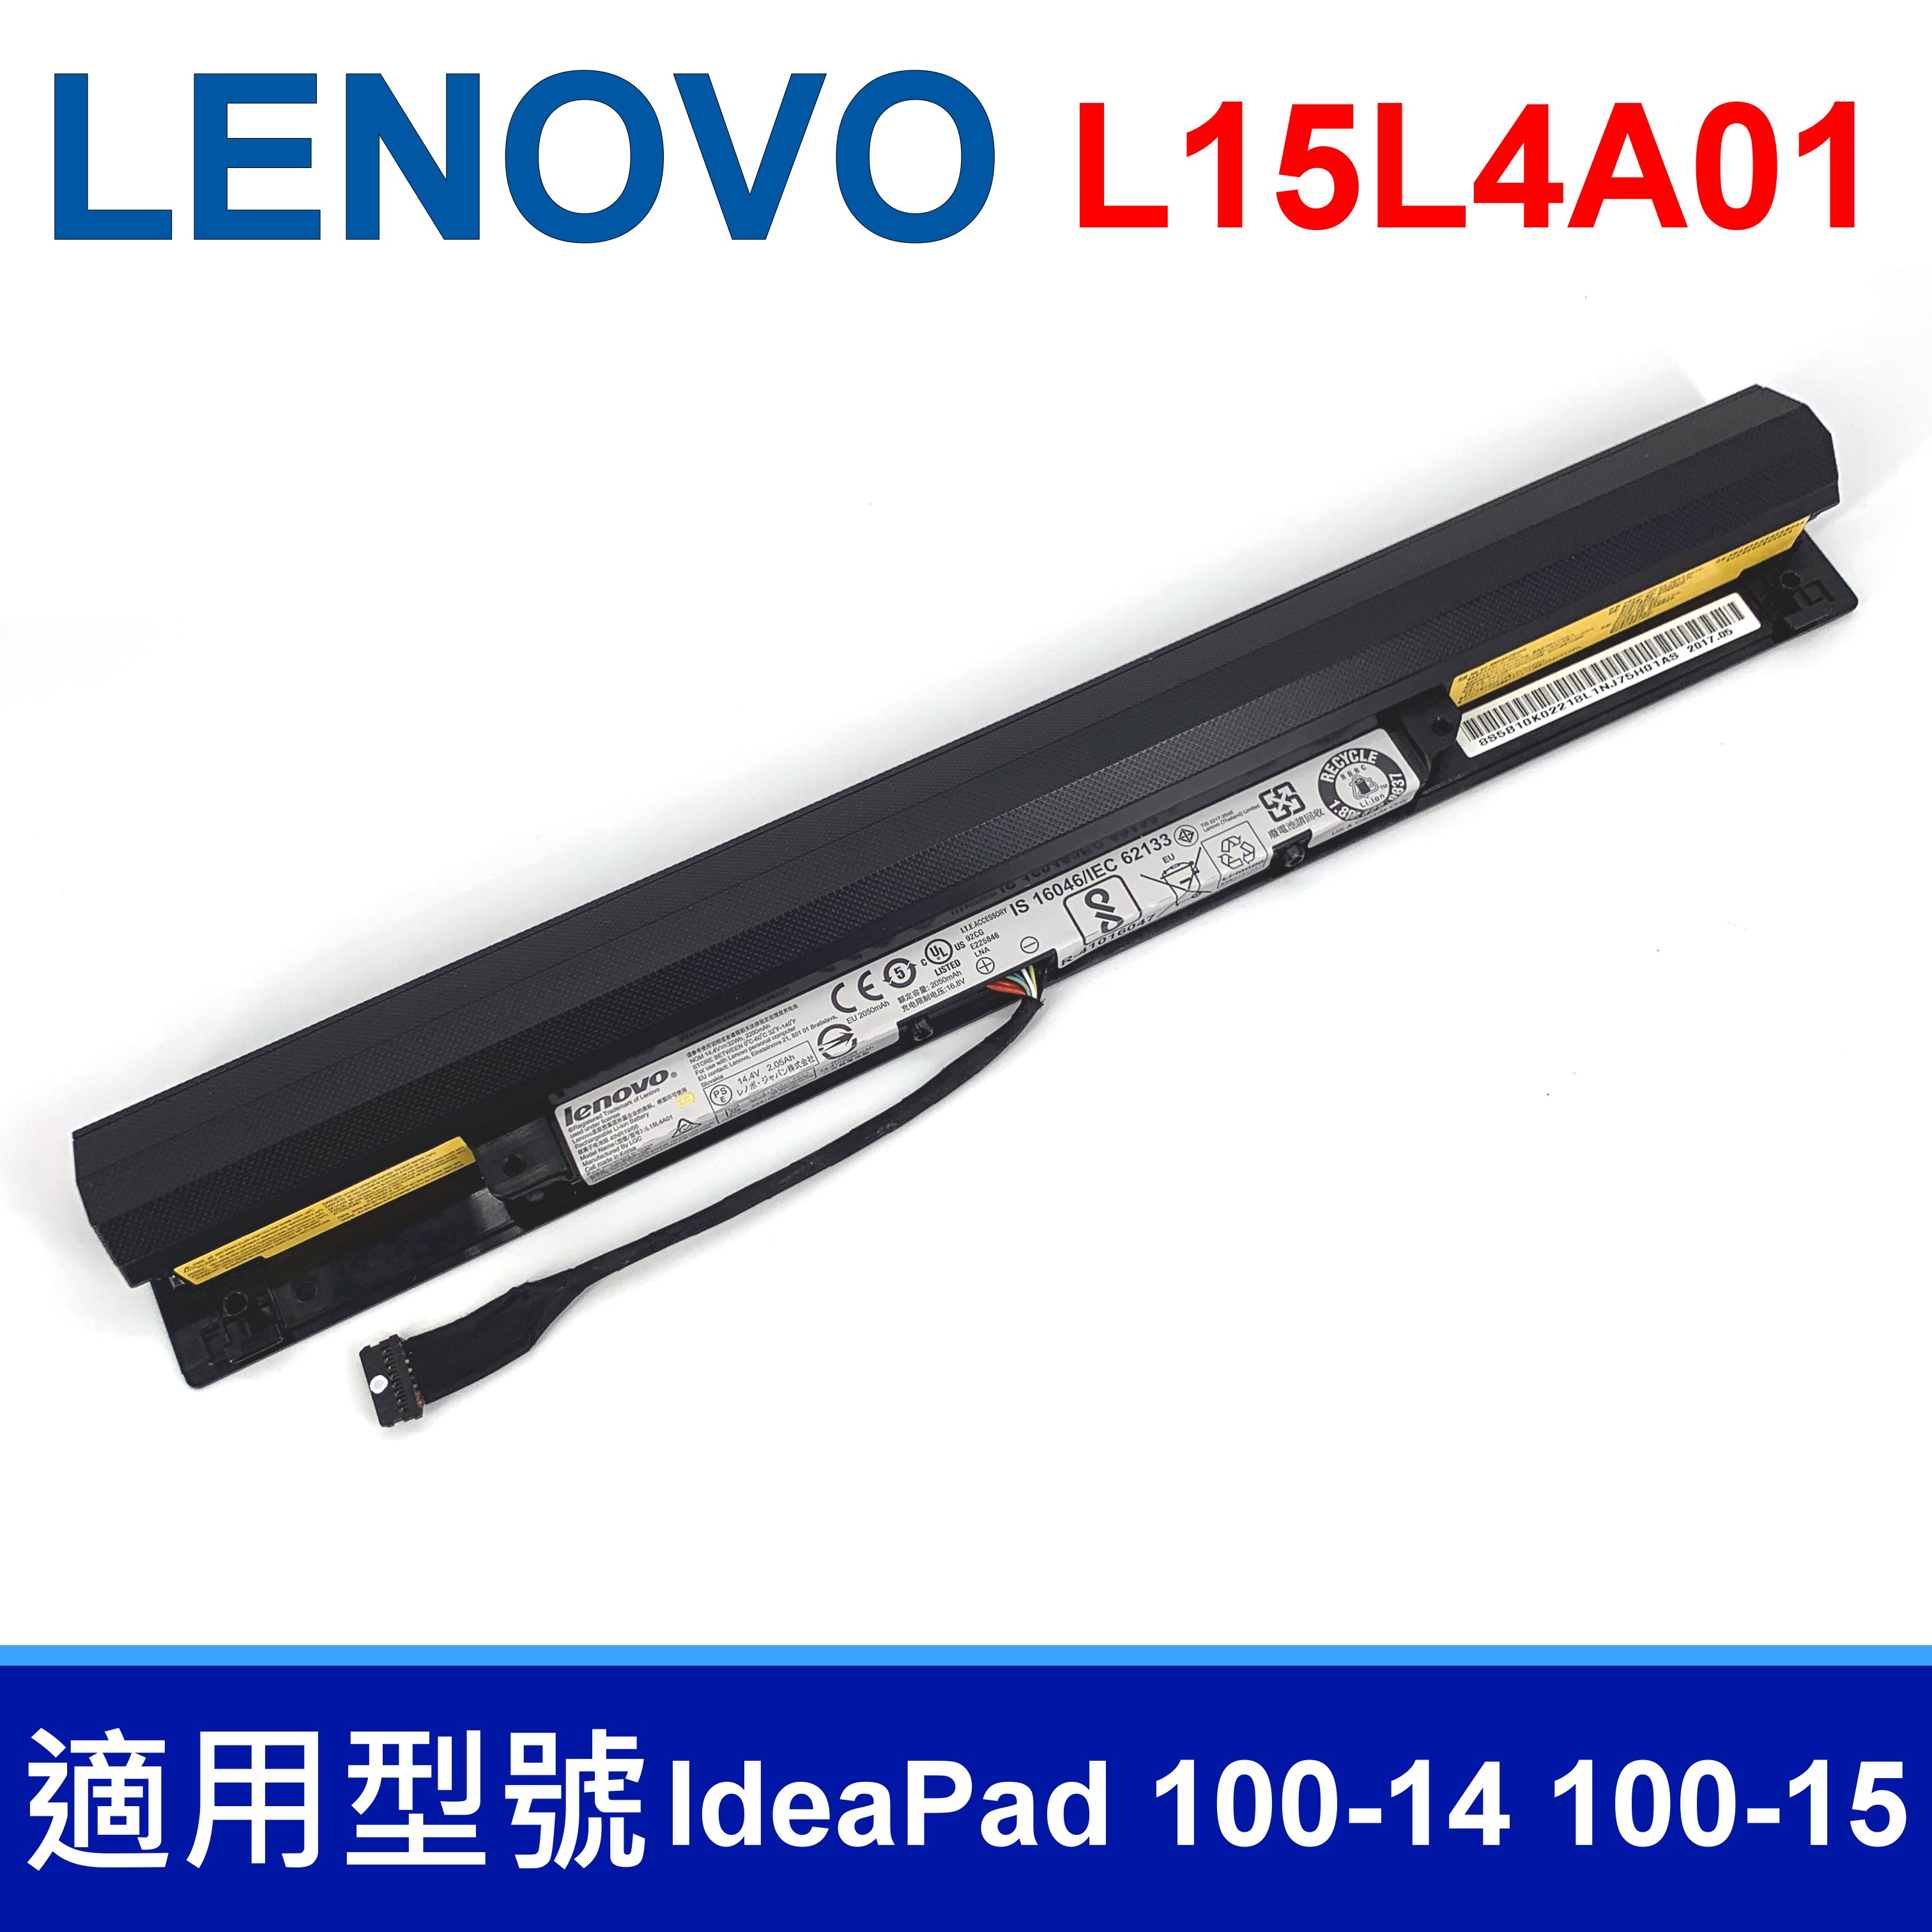 LENOVO L15L4A01 4芯 原廠電池 L15M4A01 L15S4A01 L15L4E01 L15S4E01 V4400 B50-50 100-14ibd 100-15ibd 300-14isk 300-15isk